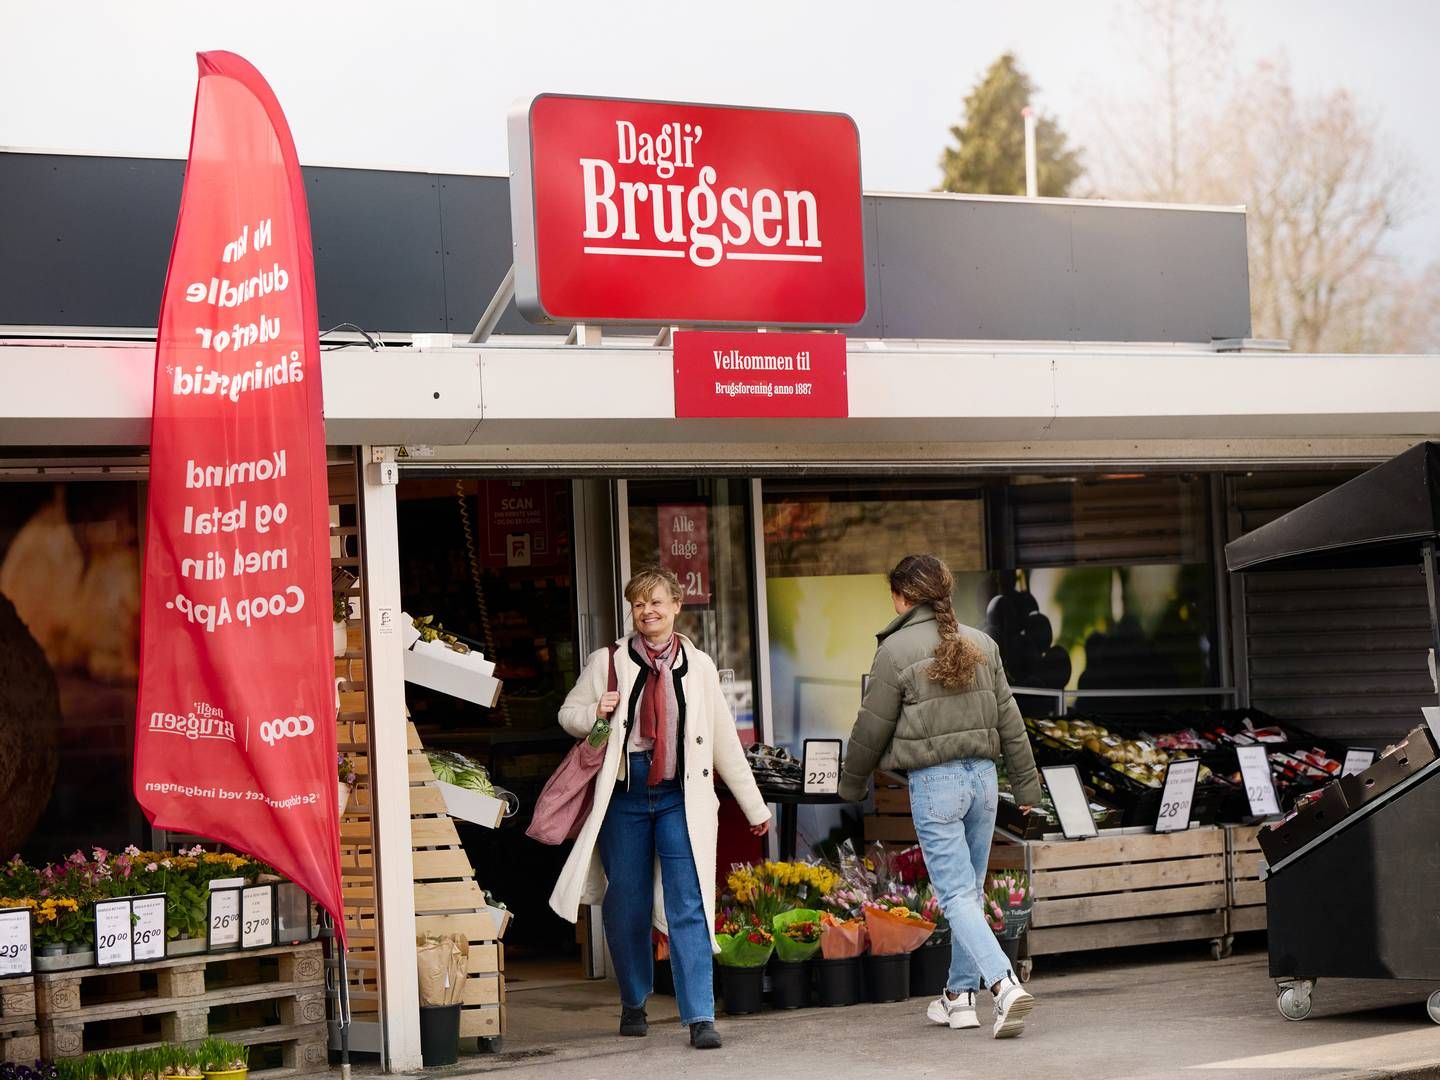 Coop har fået færre butikker i kæden Dagli'brugsen. | Photo: Niclas Jessen/coop/pr